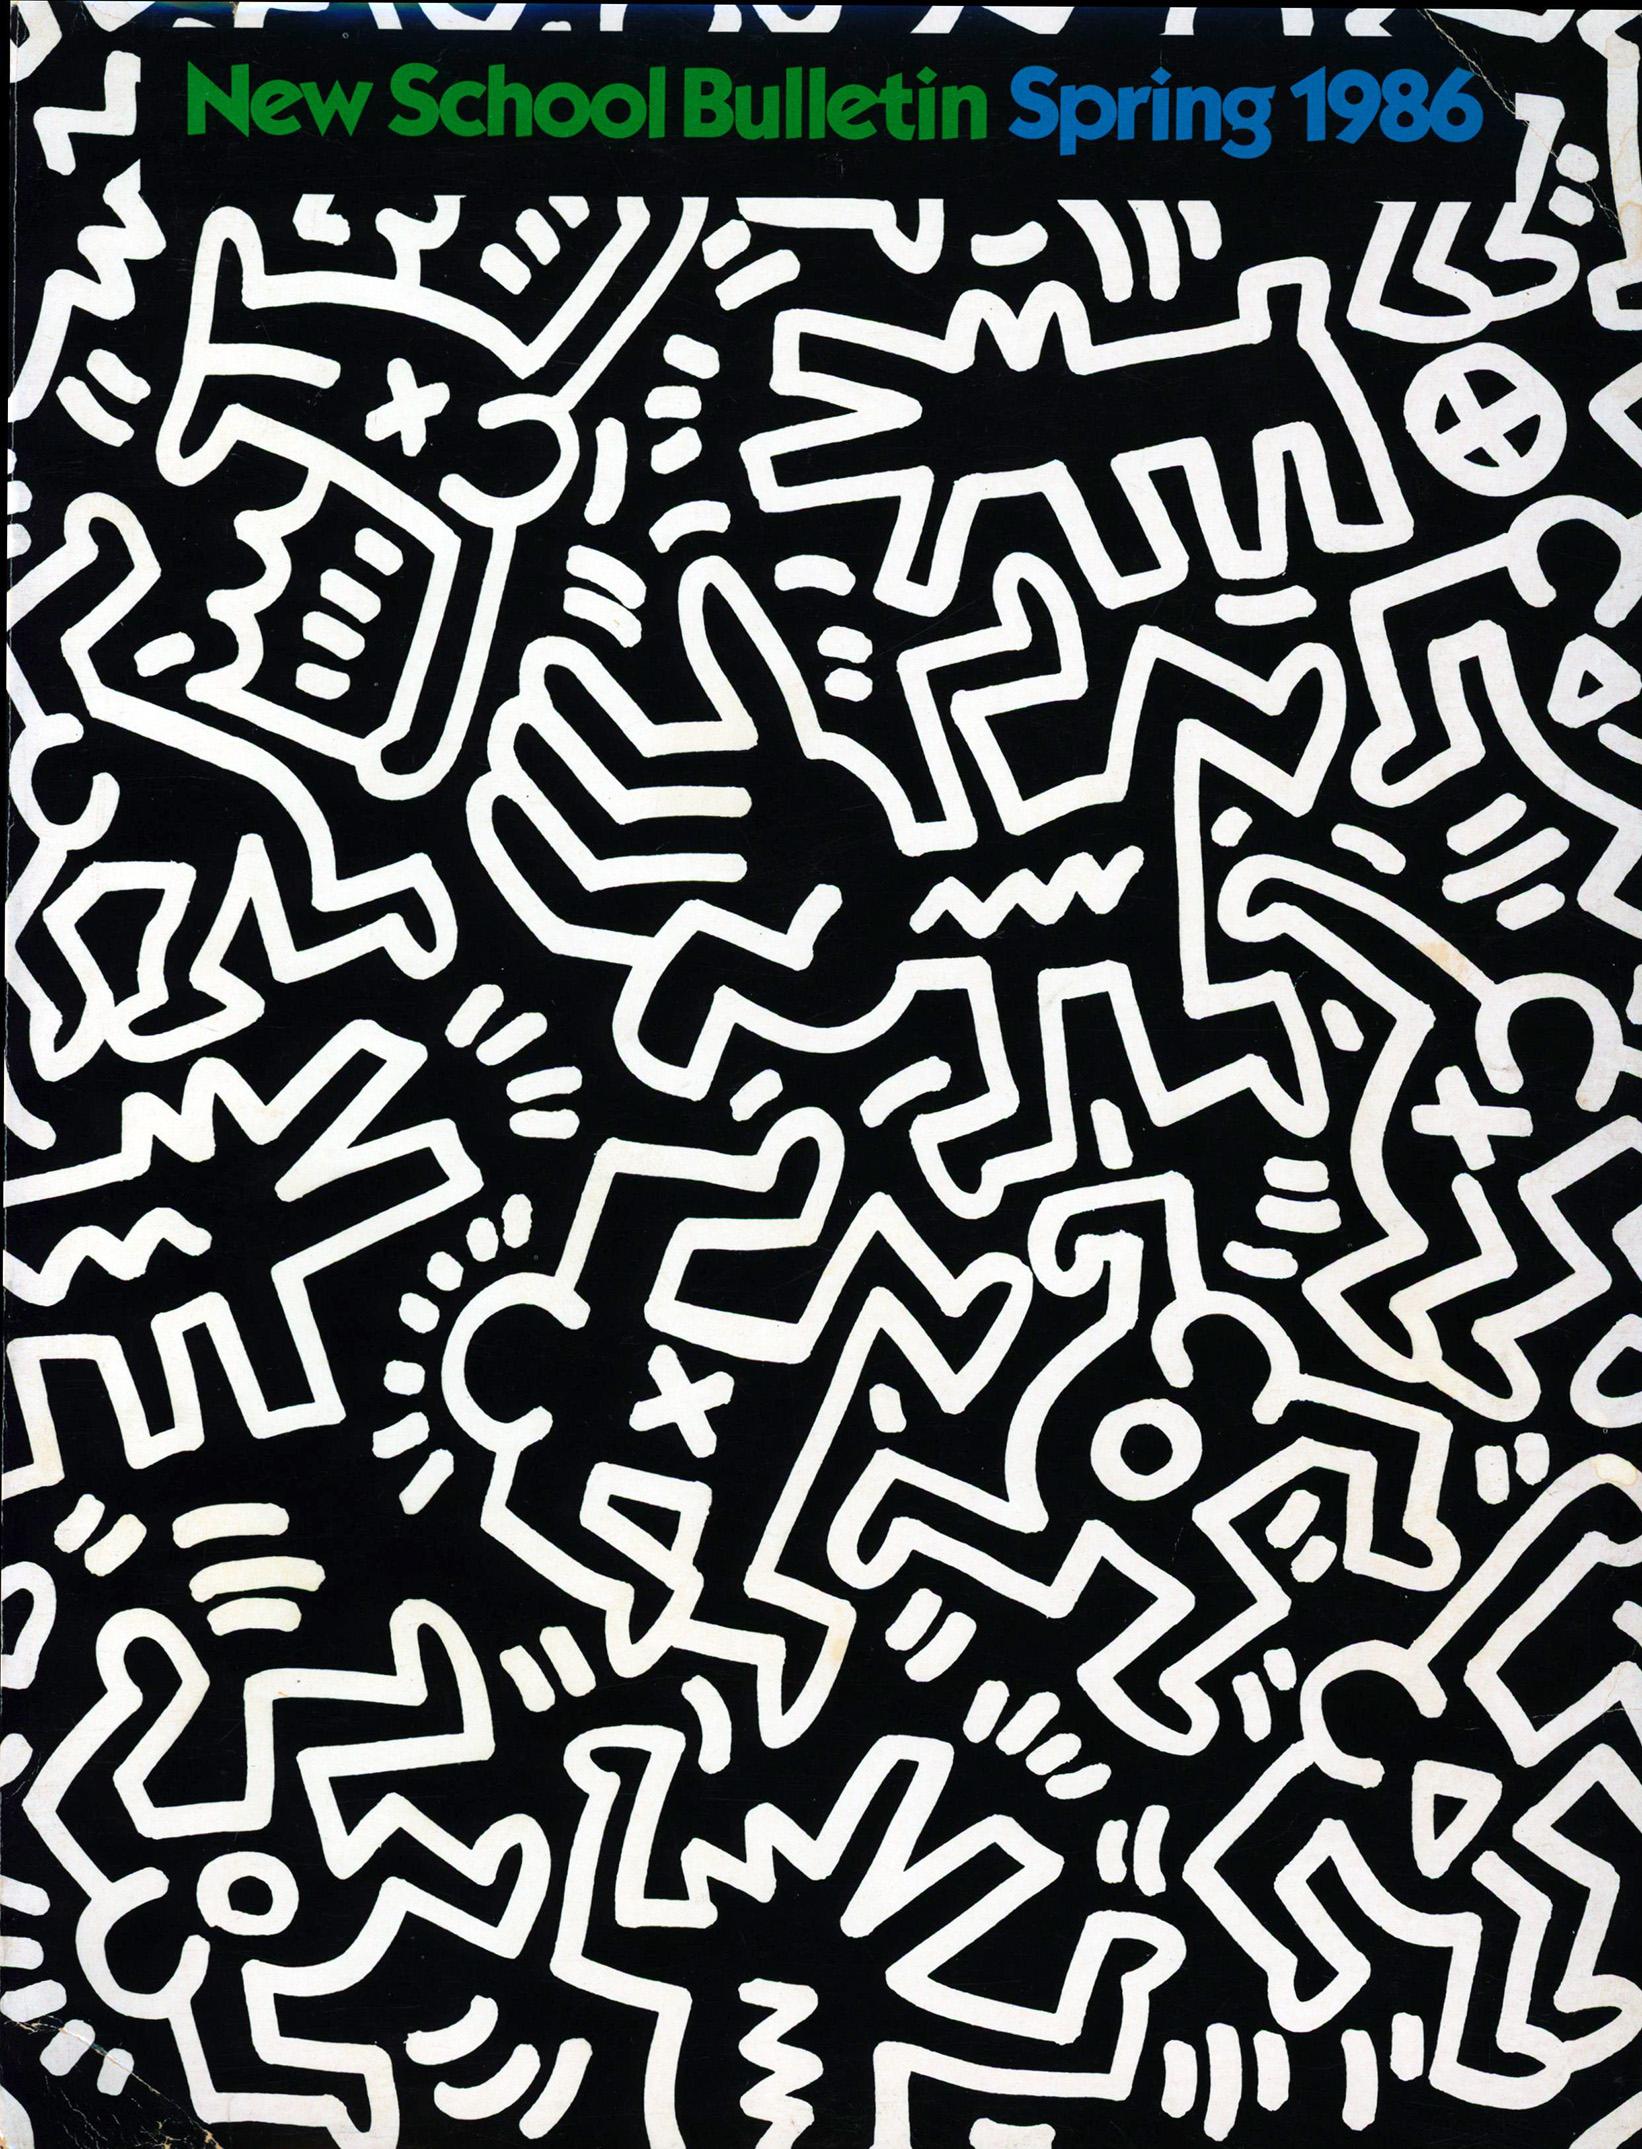 Keith Haring Illustration art 1986 :
Rare catalogue universitaire de la New School des années 1980 illustré par Keith Haring, avec une couverture recto-verso de Haring et une signature imprimée. Assez rare, surtout en bon état comme présenté